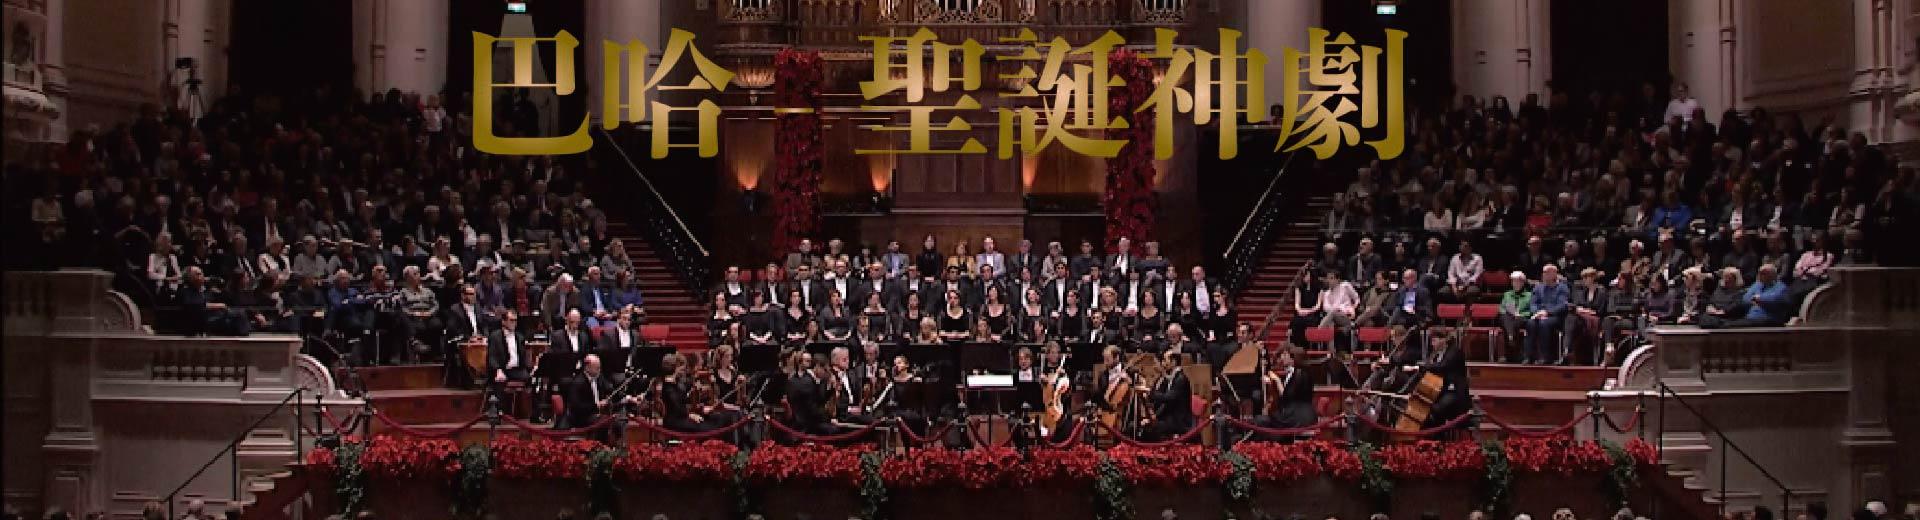 巴哈 - 聖誕神劇Bach - Christmas Oratorio (BWV 248)  I-III